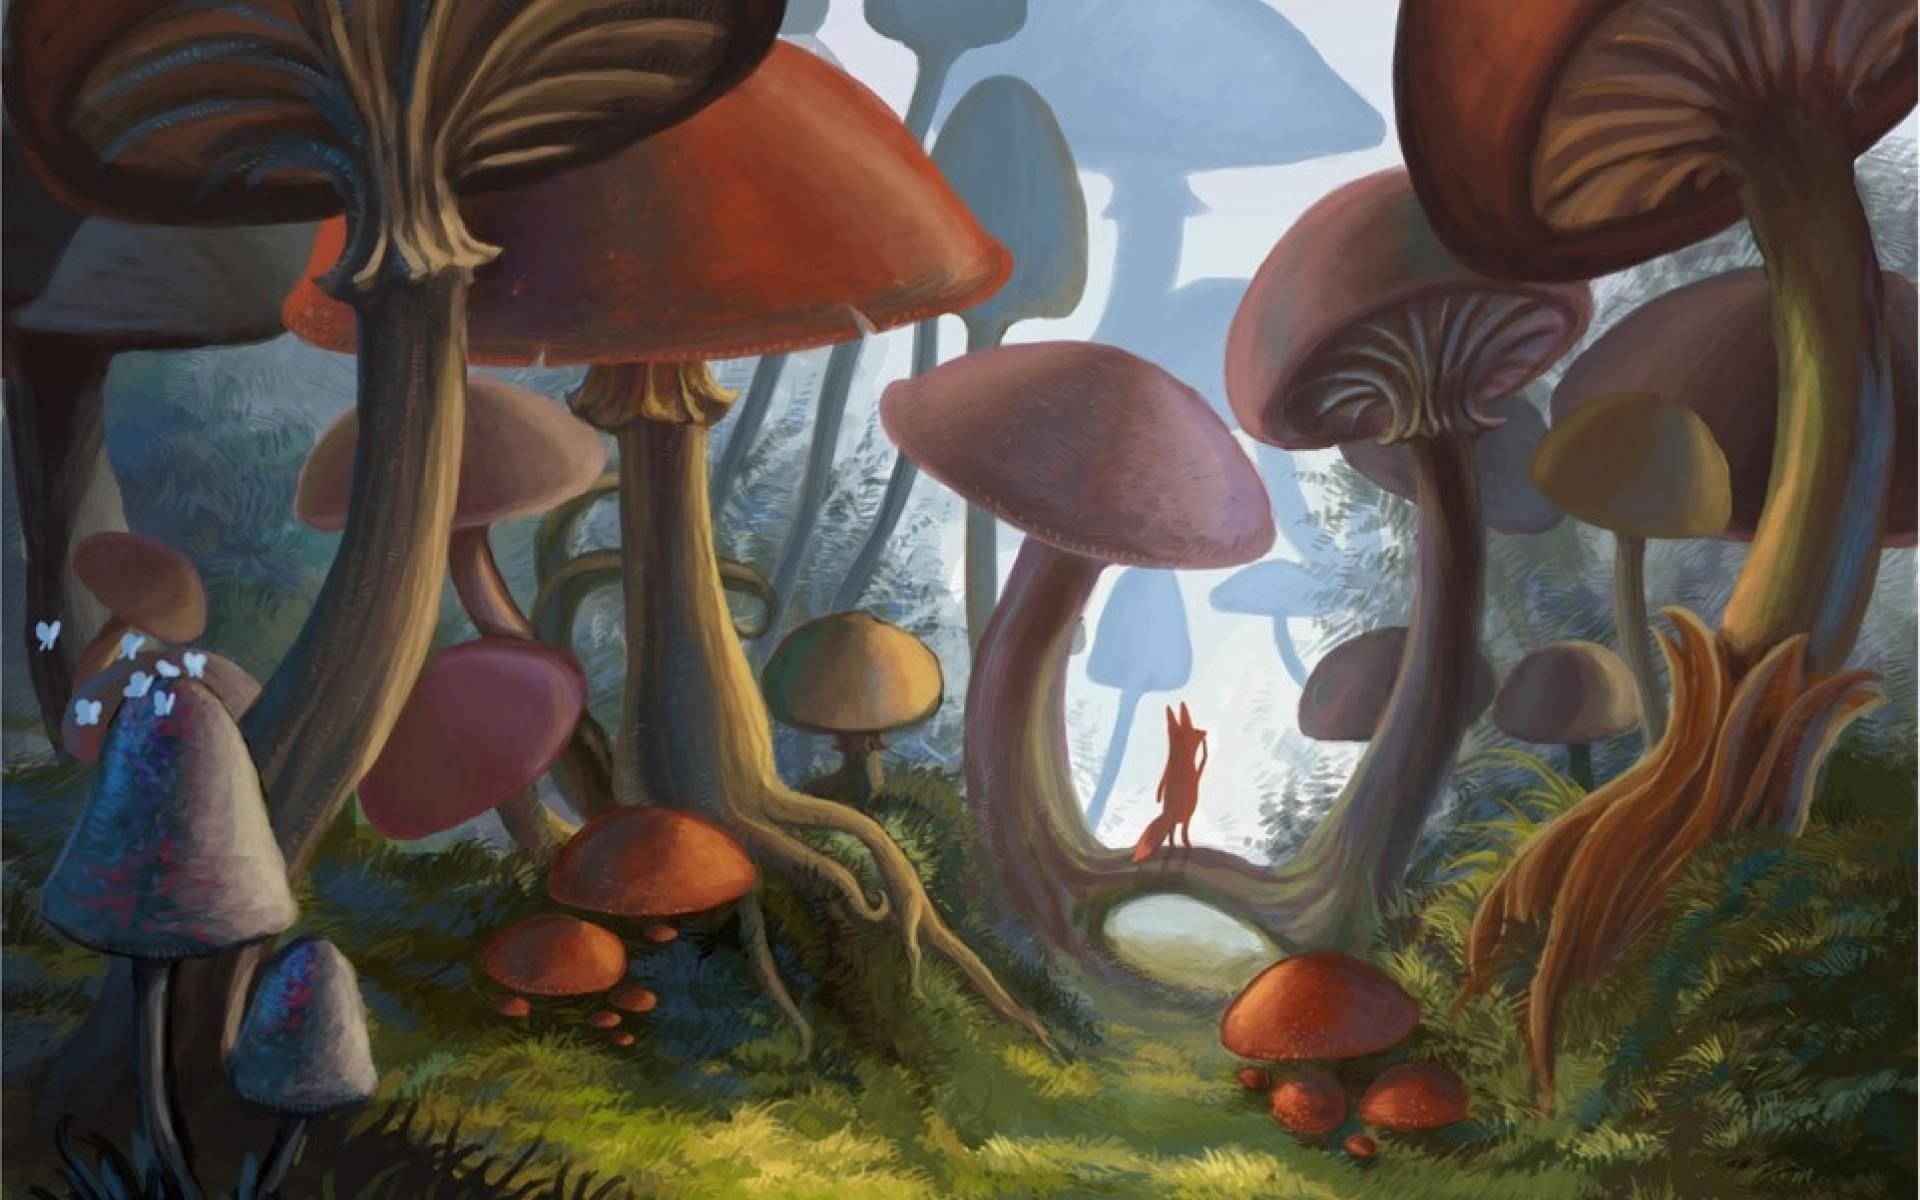 Рена грибов. Машрум Форест. Мухомор инди КИД. Волшебные грибы Алиса в стране чудес рисунки. Сказочные грибы.